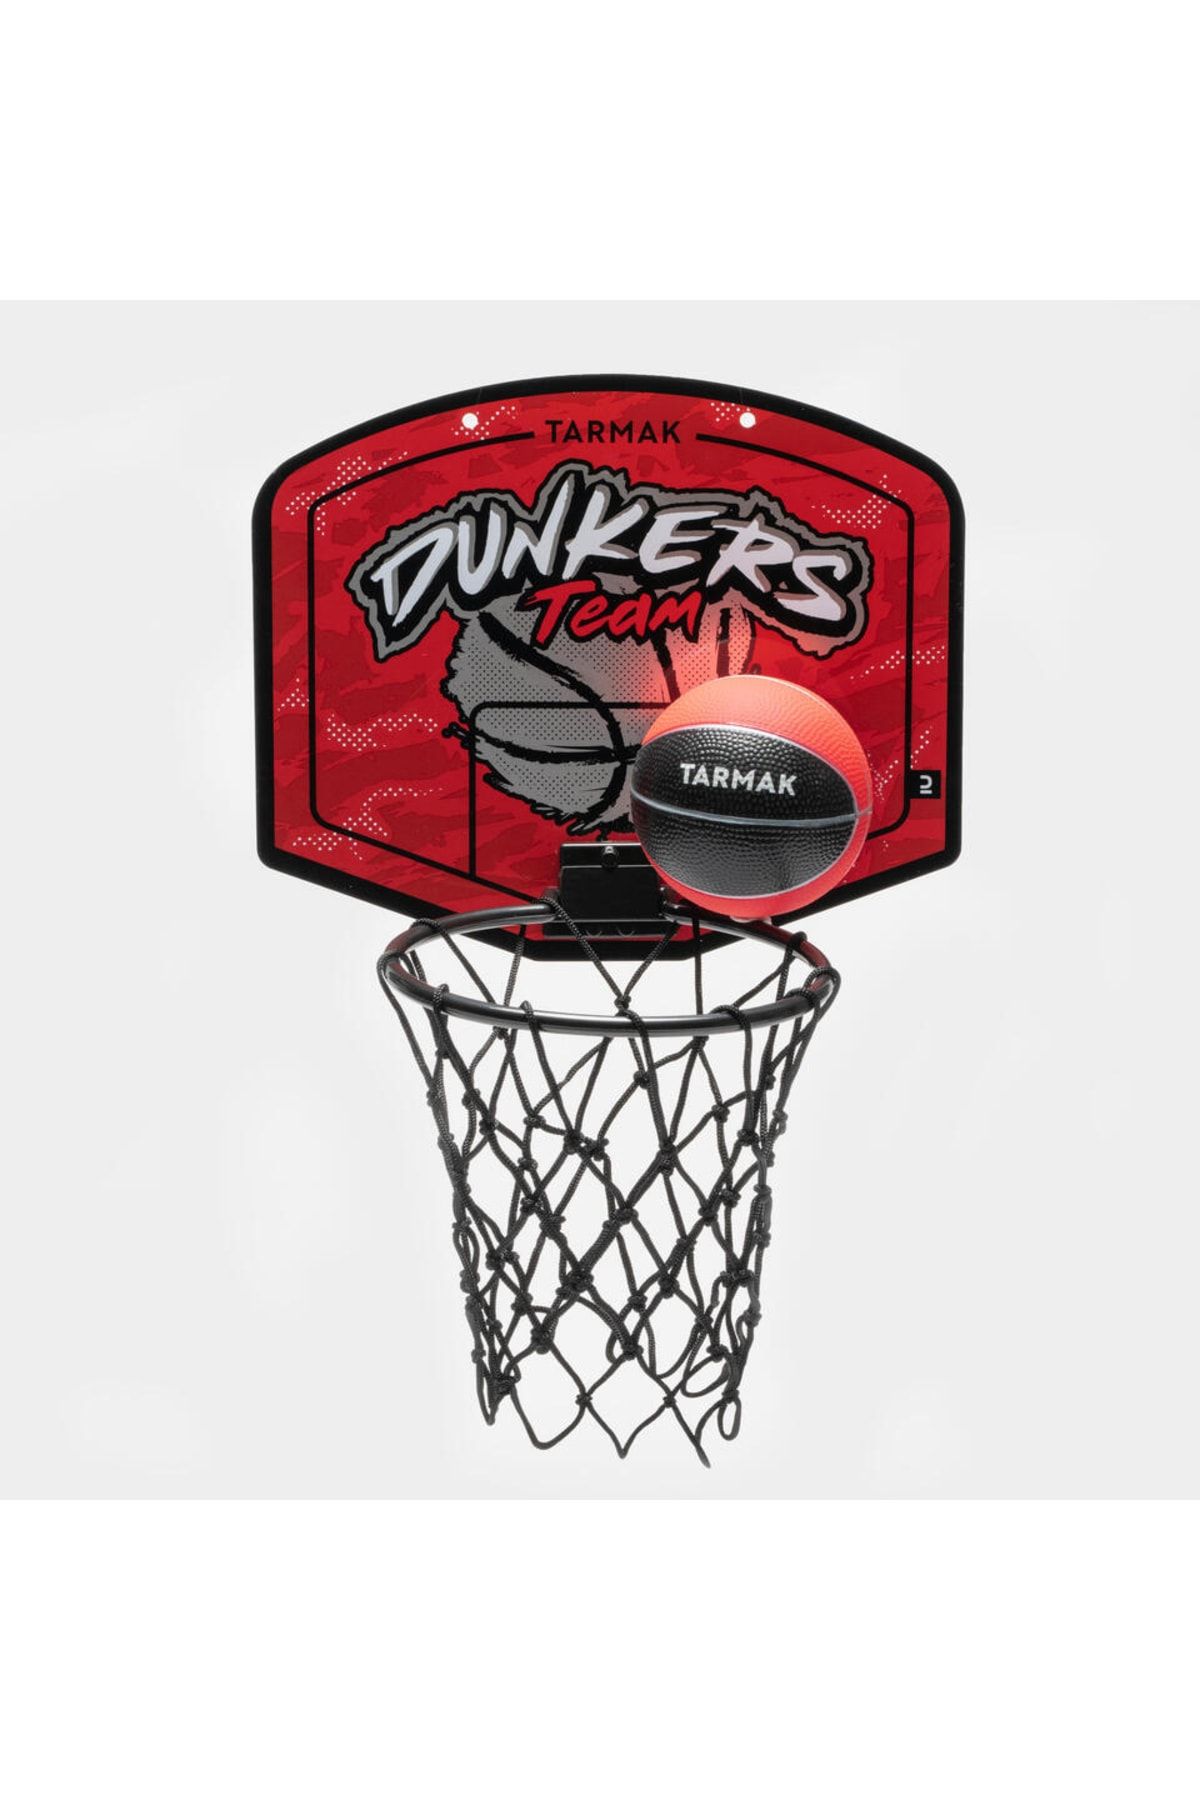 Decathlon - Çocuk Yetişkin Mini Basketbol Potası Kırmızı Gümüş Sk100 Dunkers